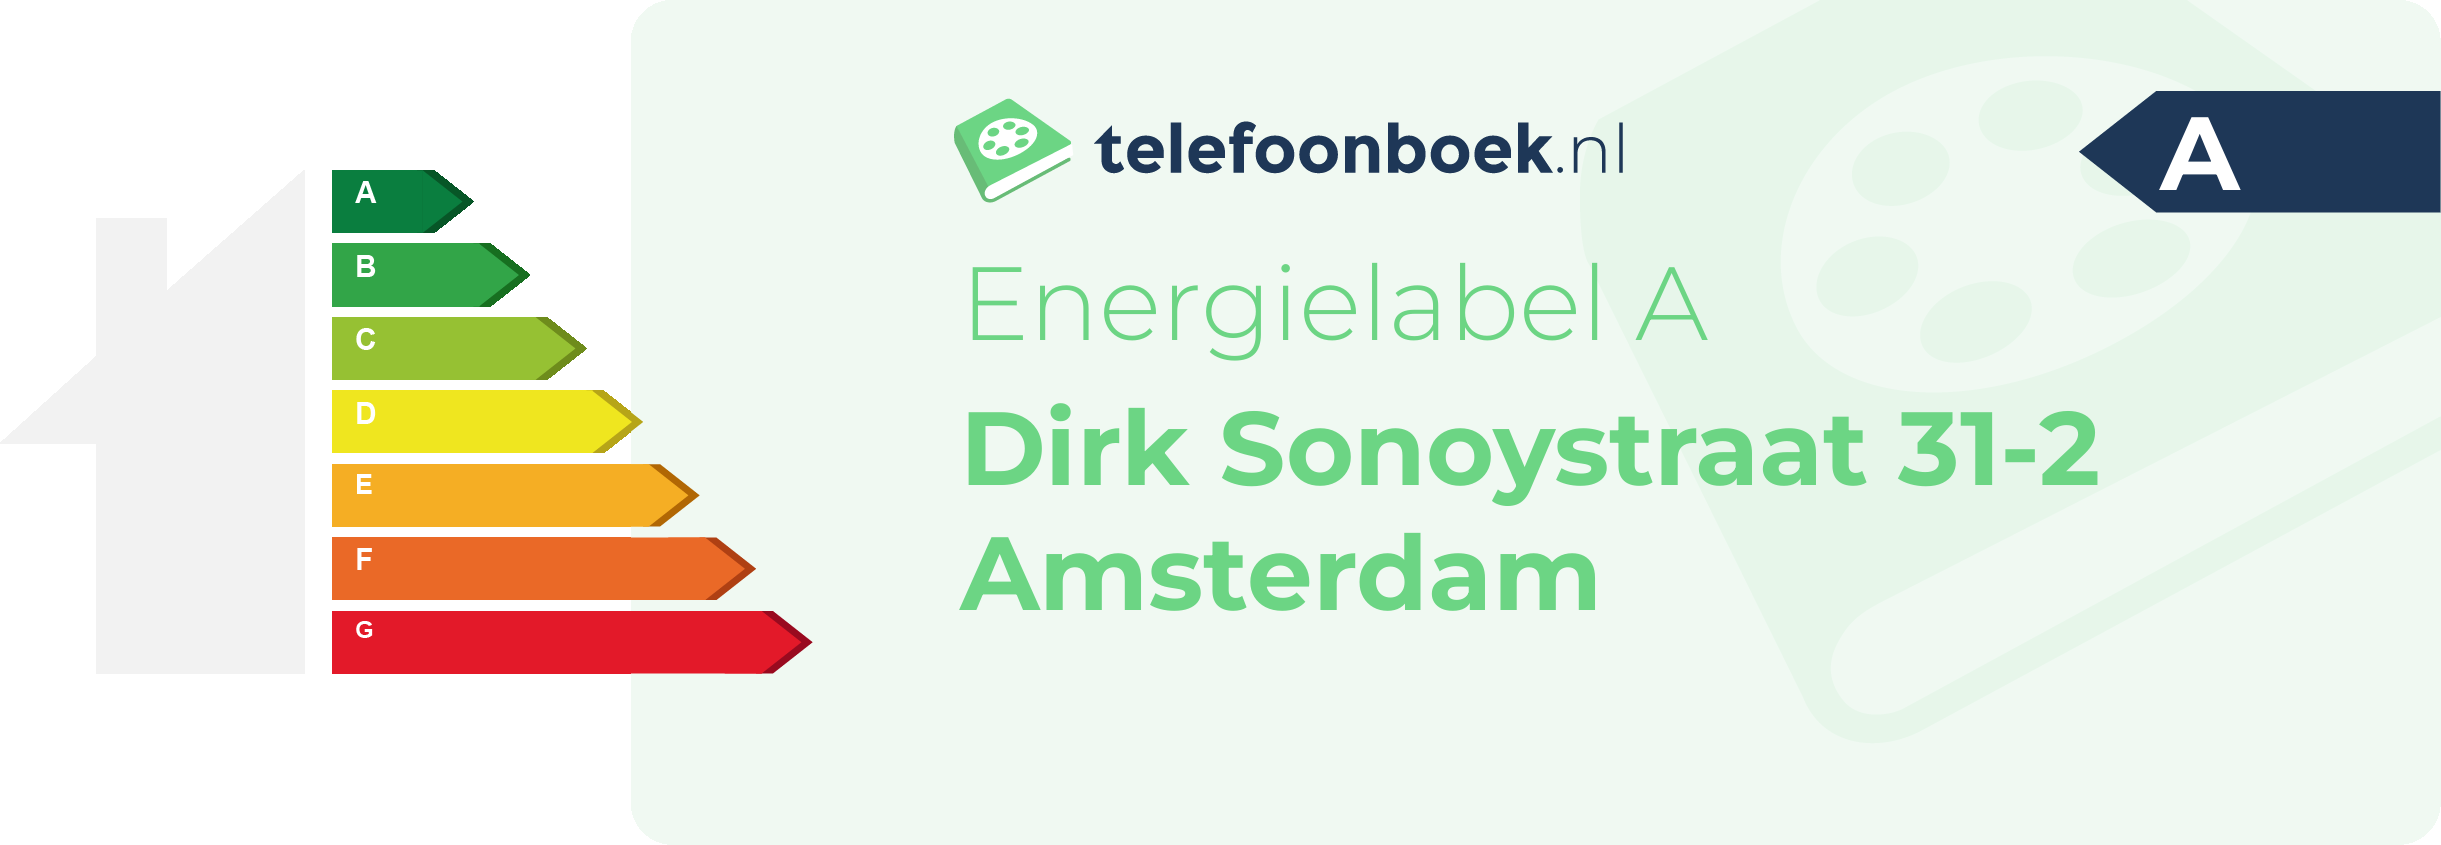 Energielabel Dirk Sonoystraat 31-2 Amsterdam